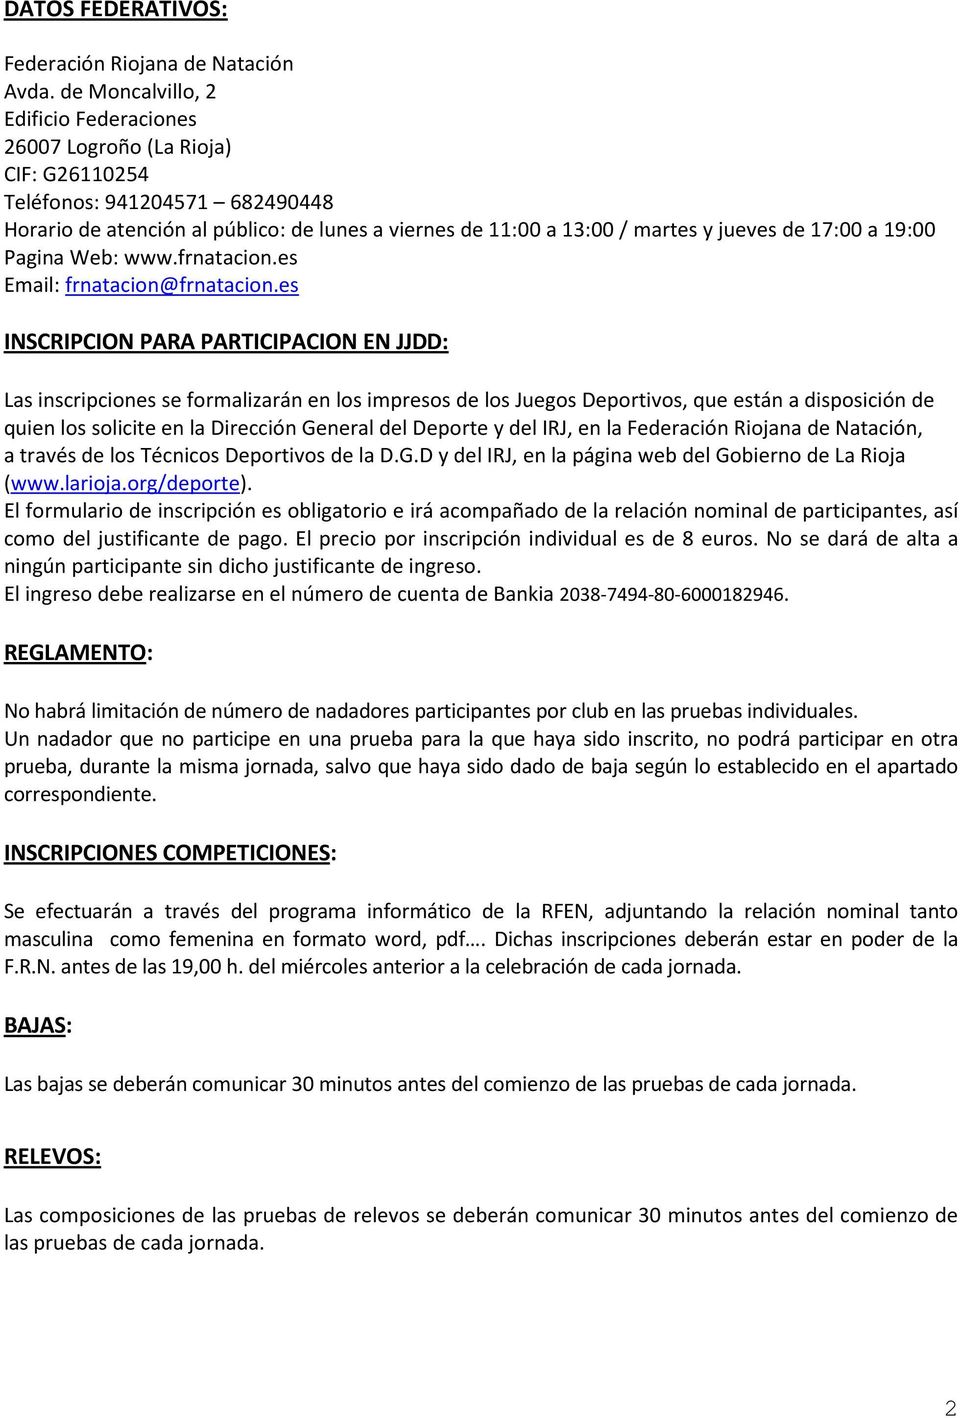 17:00 a 19:00 Pagina Web: www.frnatacion.es Email: frnatacion@frnatacion.